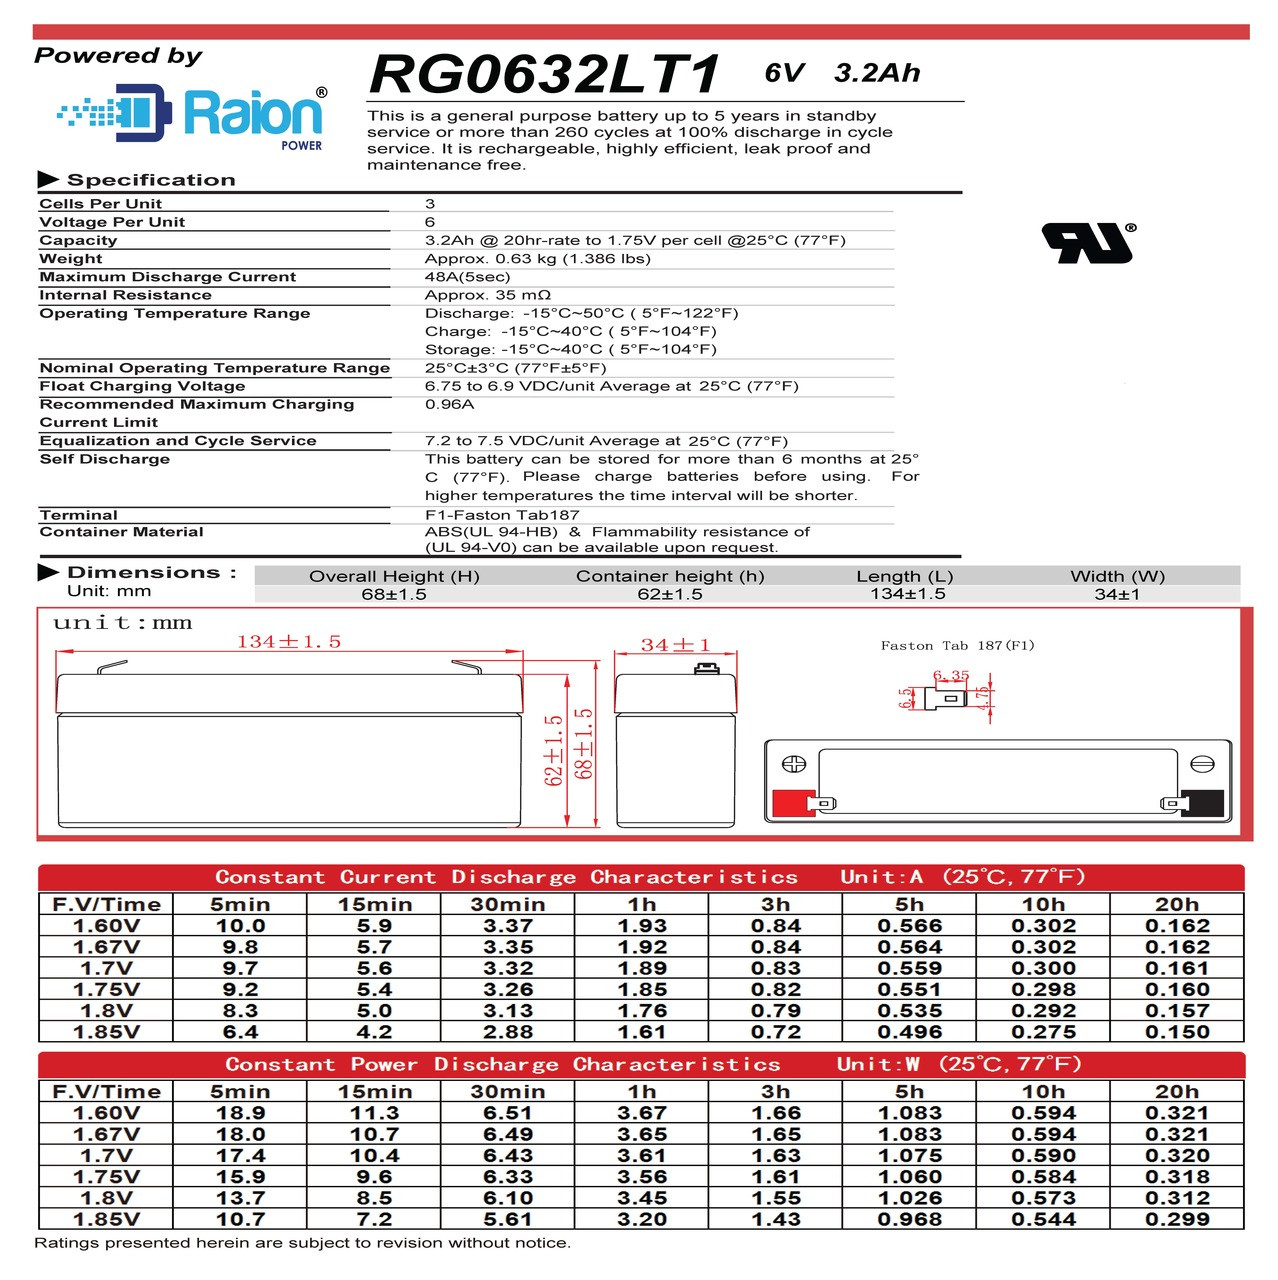 Raion Power RG0632LT1 6V 3.2Ah Battery Data Sheet for Gambro Engstrom PD10 Dialysis